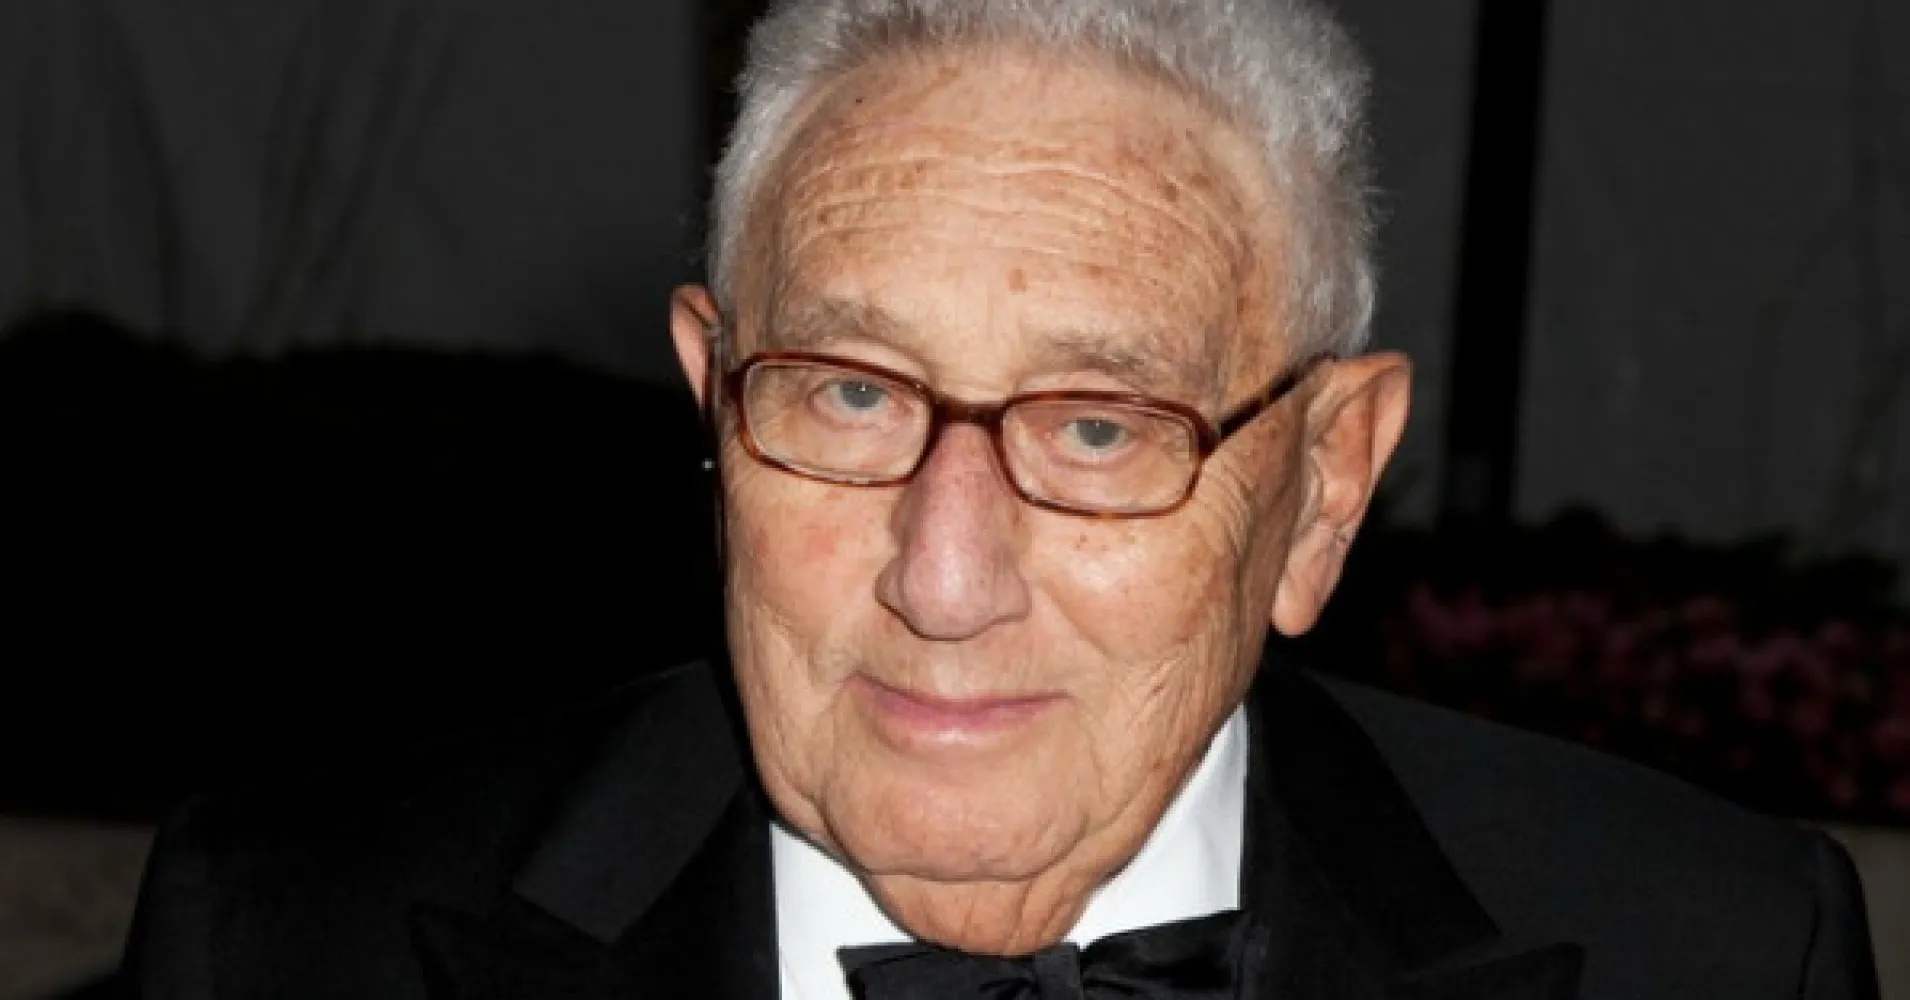 Kissinger: Non sarebbe saggio adottare lo stesso atteggiamento ostile nei confronti di Russia e Cina